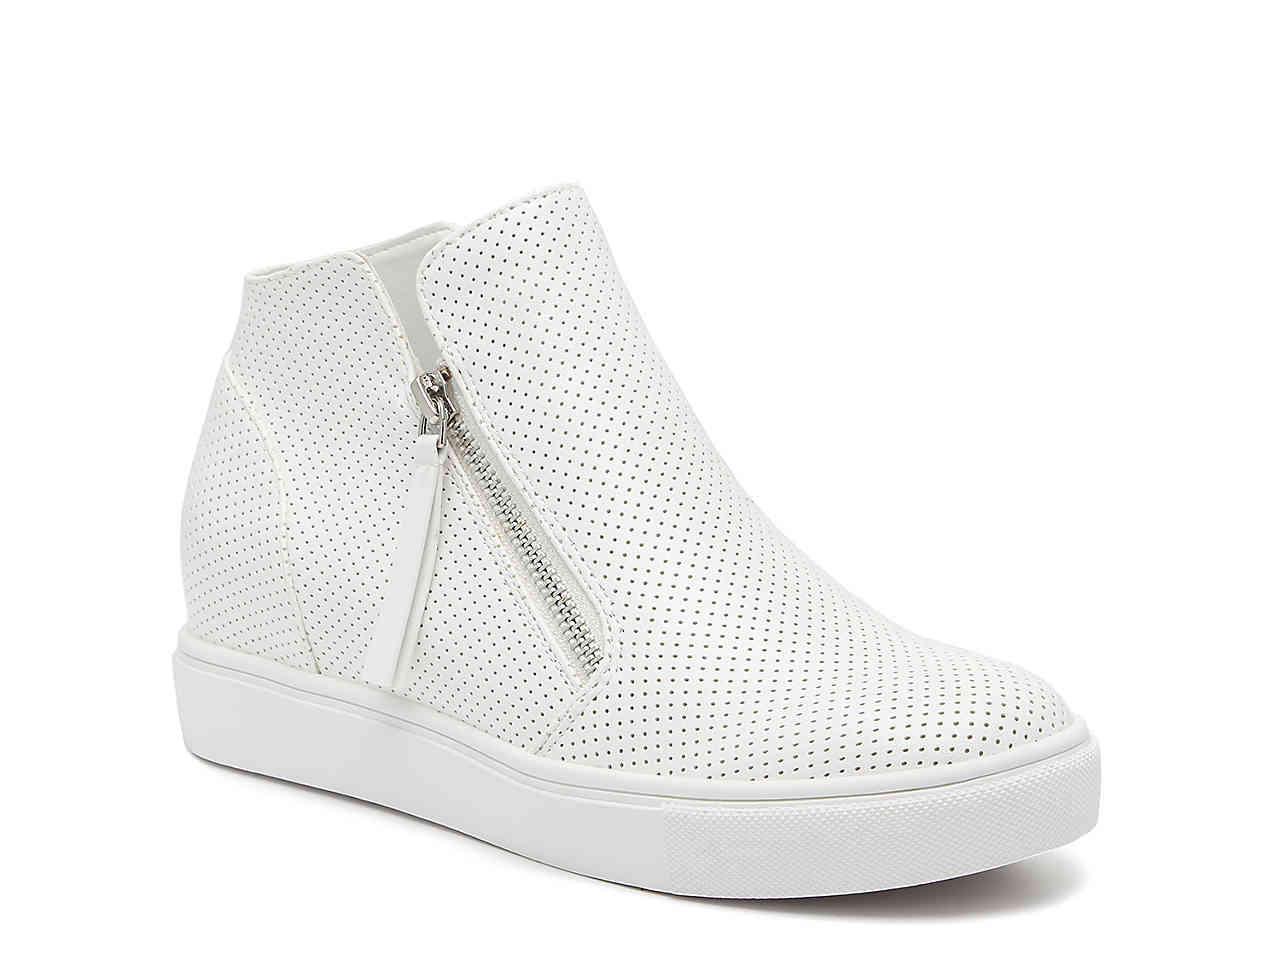 Steve Madden Caliber Wedge Sneaker in White - Lyst